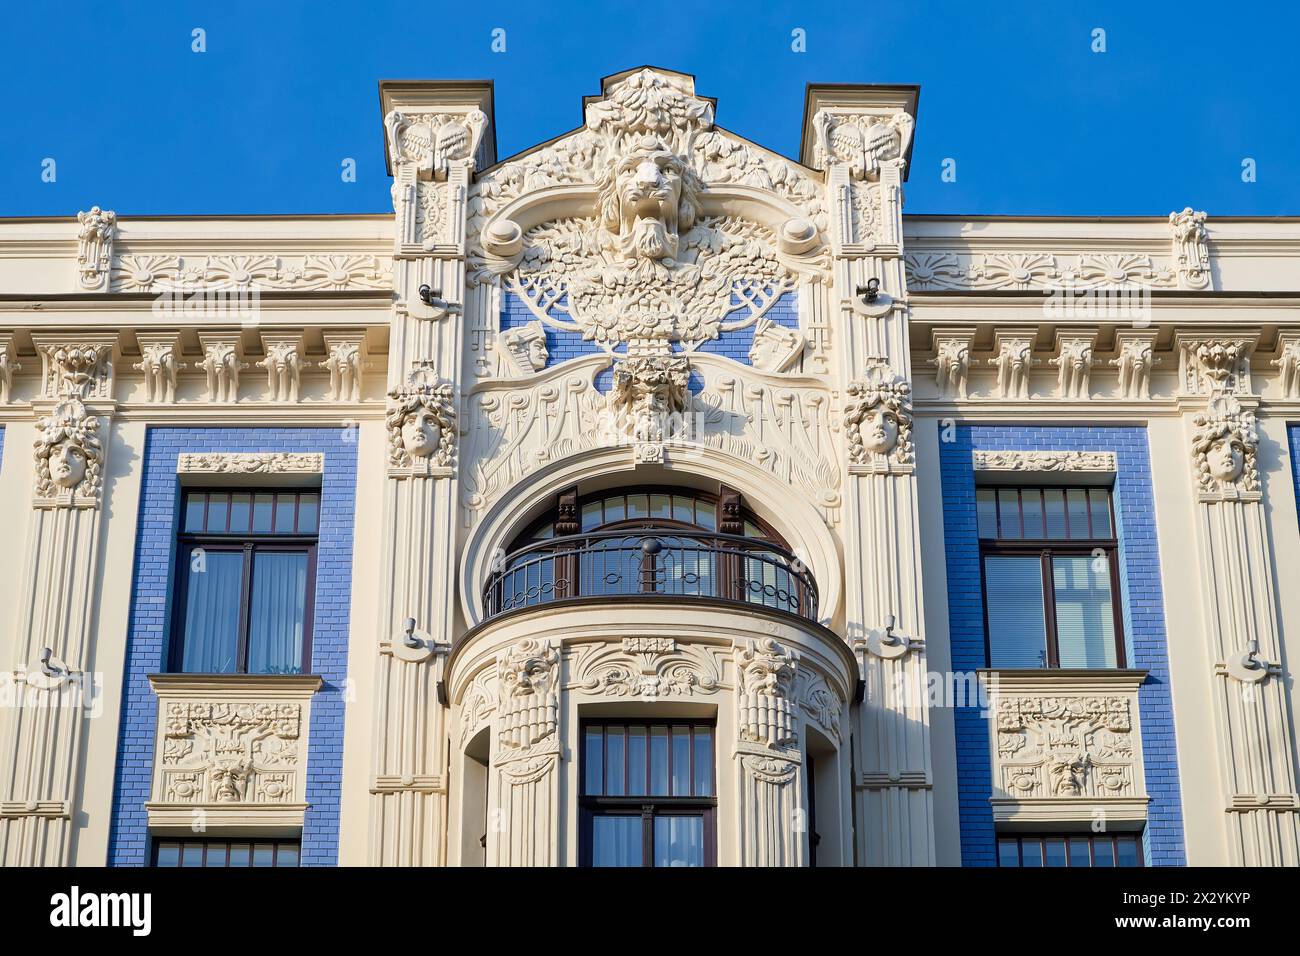 Attrazione turistica lettone - architettura Art Nouveau, facciata di edifici della città di riga, Lettonia. Foto Stock